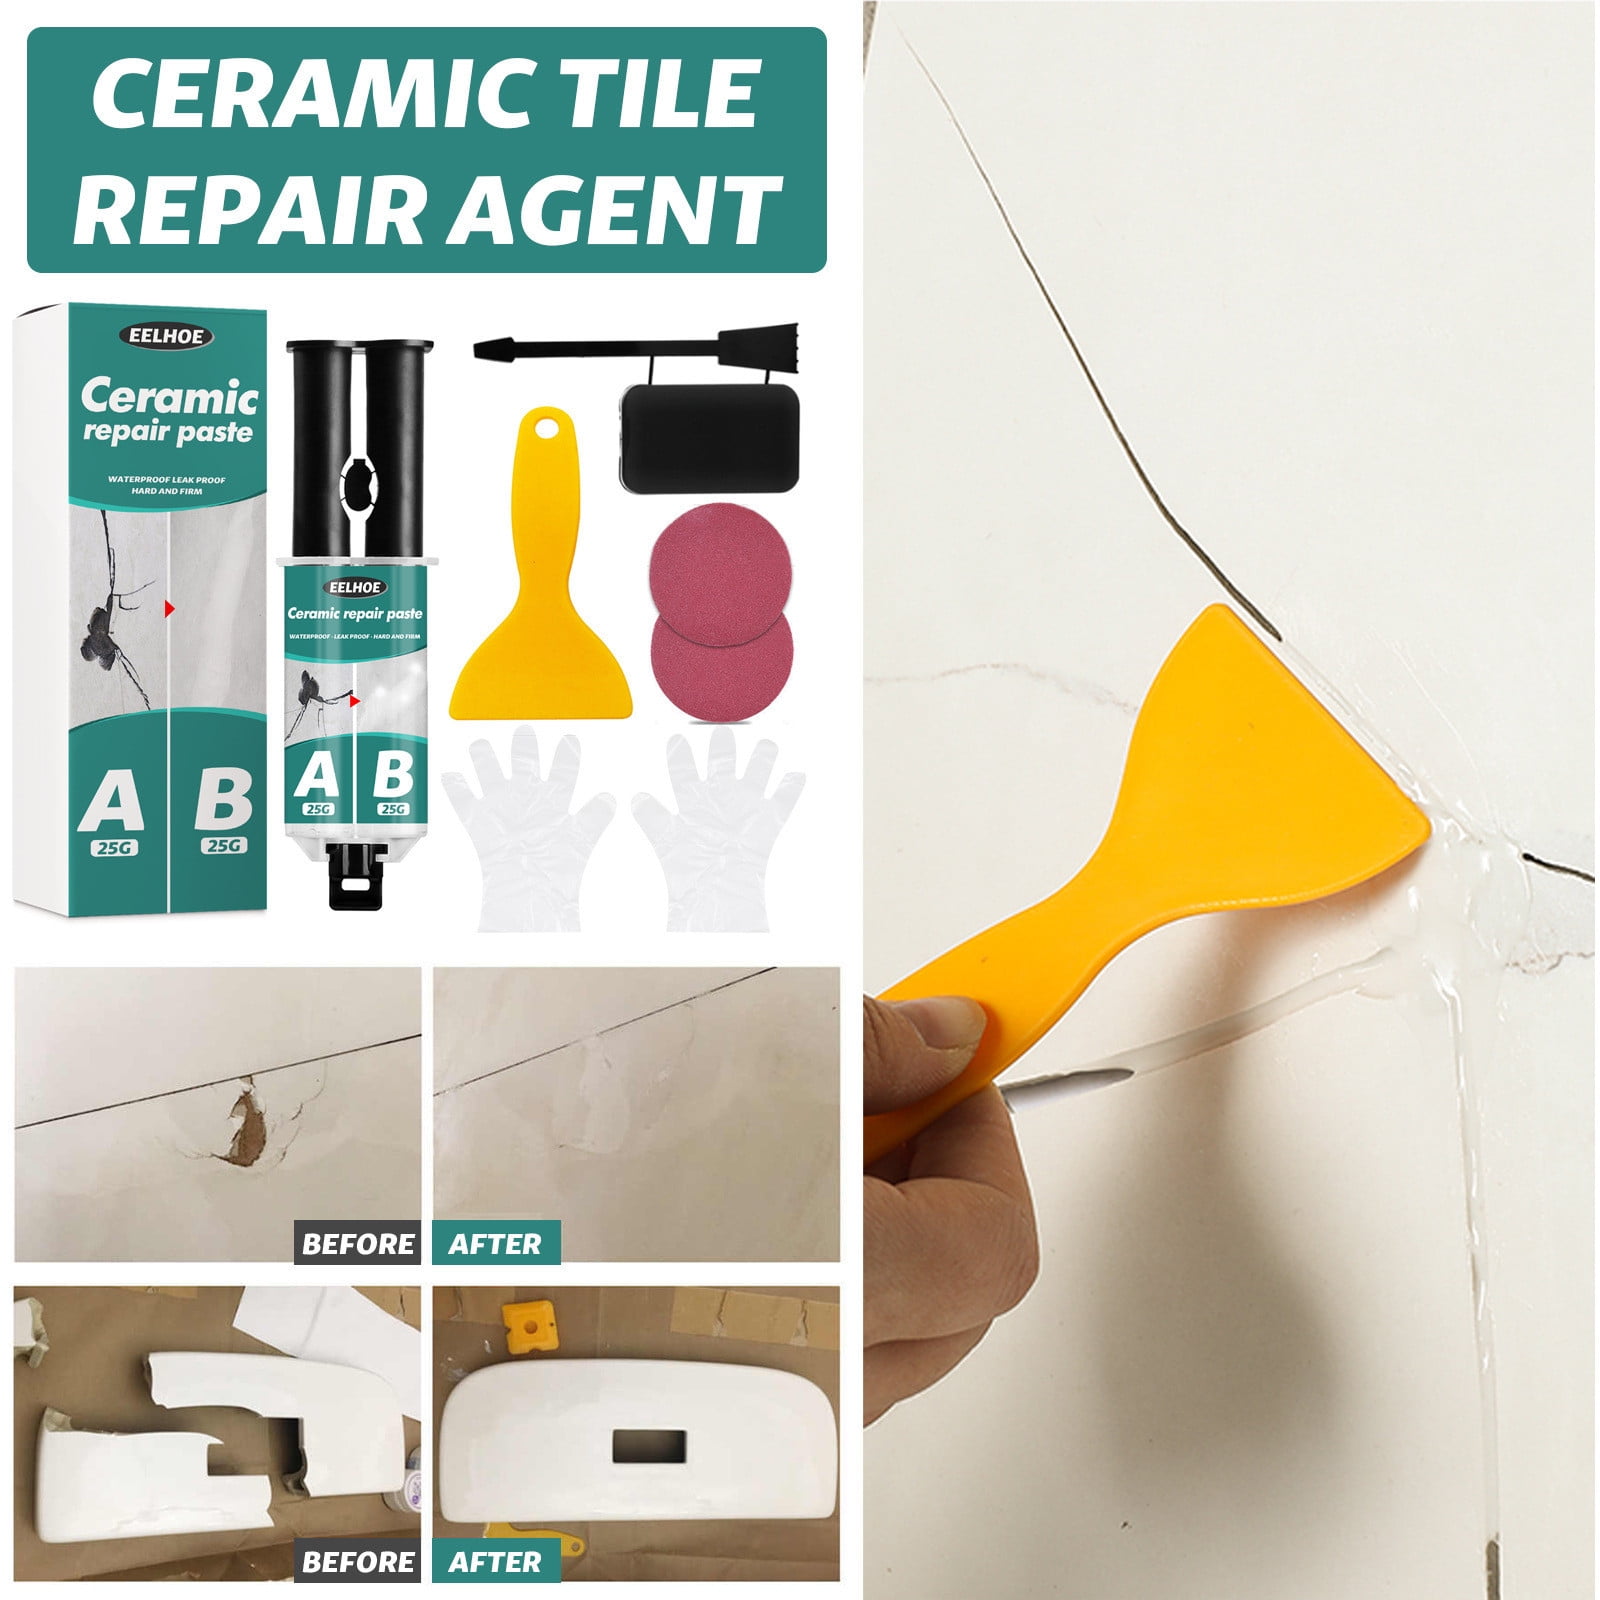 Multipurpose Marble & Granite Porcelain Repair Kit - Waterproof Epoxy Countertop Repair Kit Powerful Tile Repair Kit Includes 50g Repair Agent and